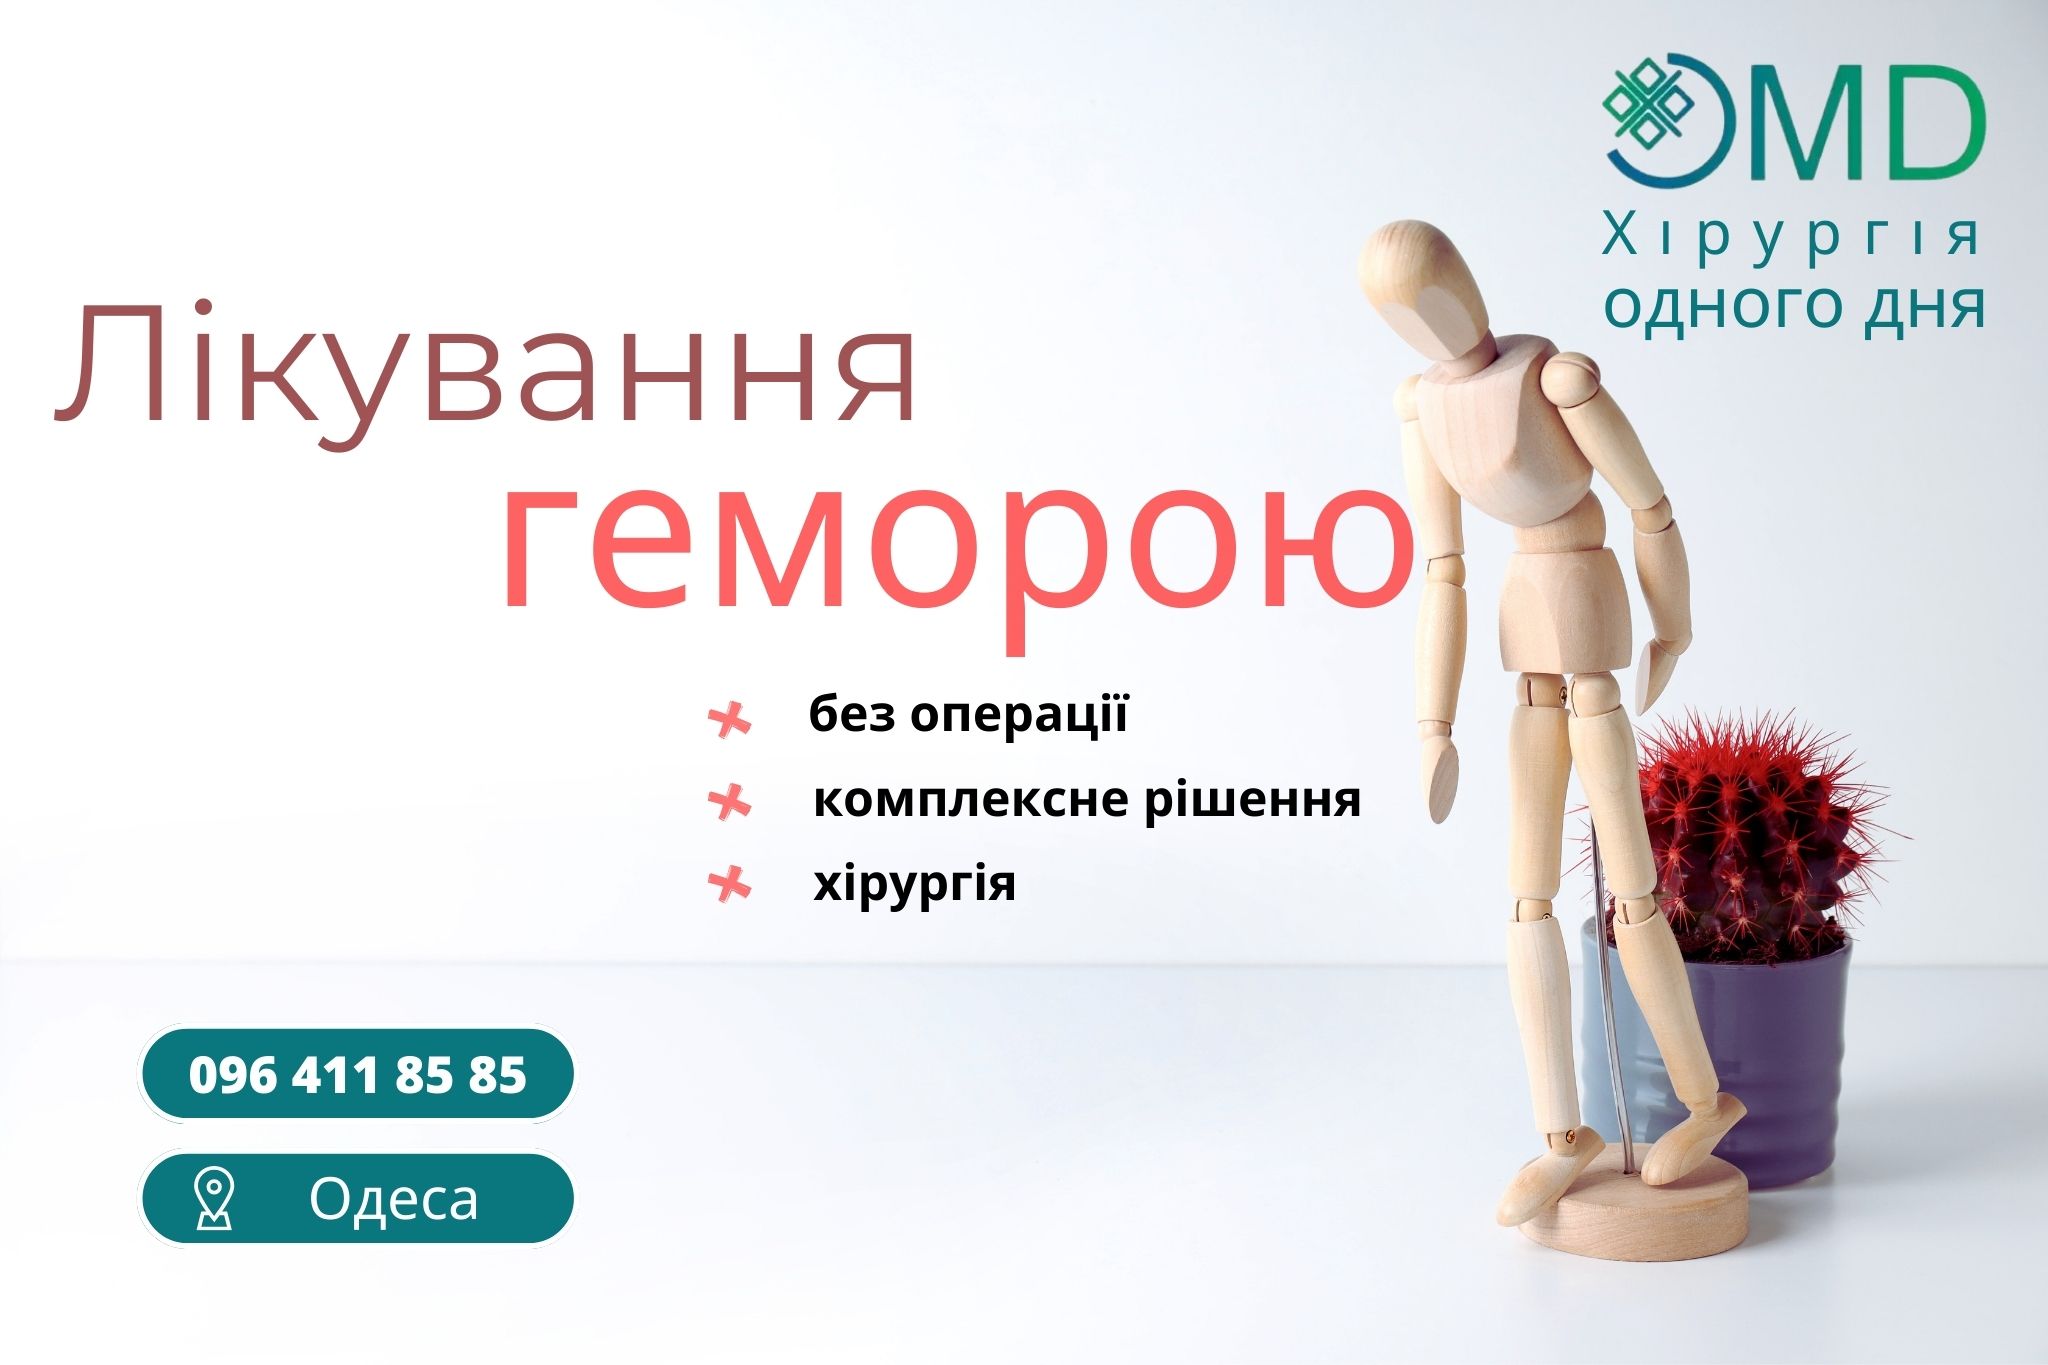 Лечение Геморроя в Одессе: Современные Методы и Подходы в Клинике ОМД